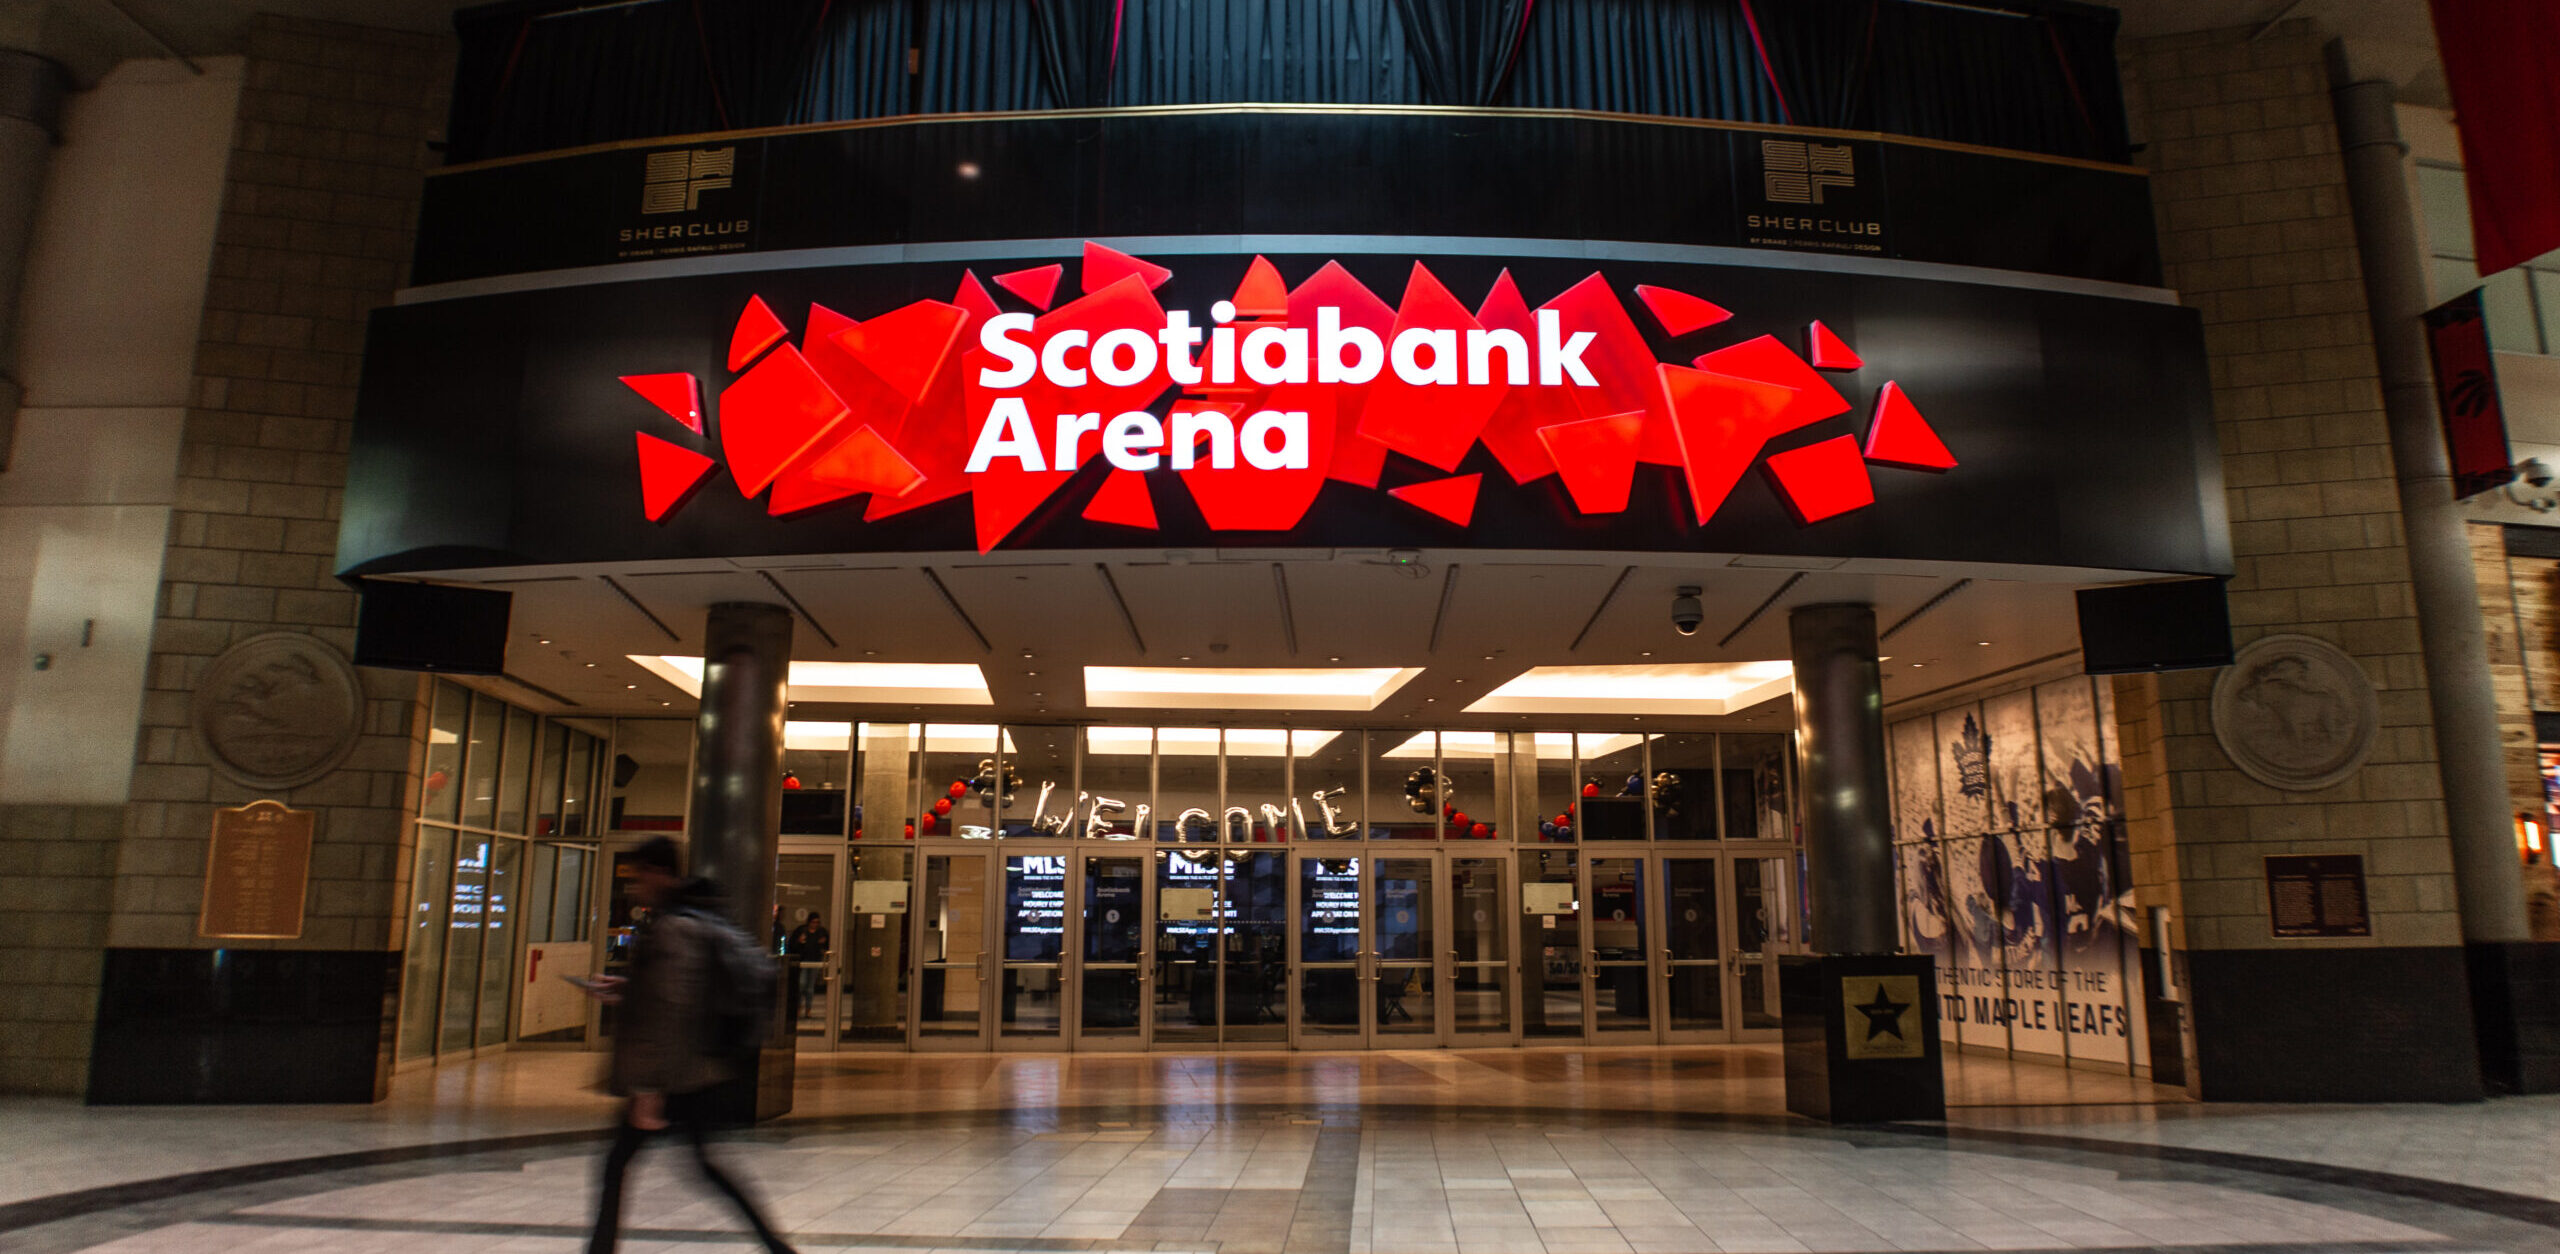 Scotiabank arena